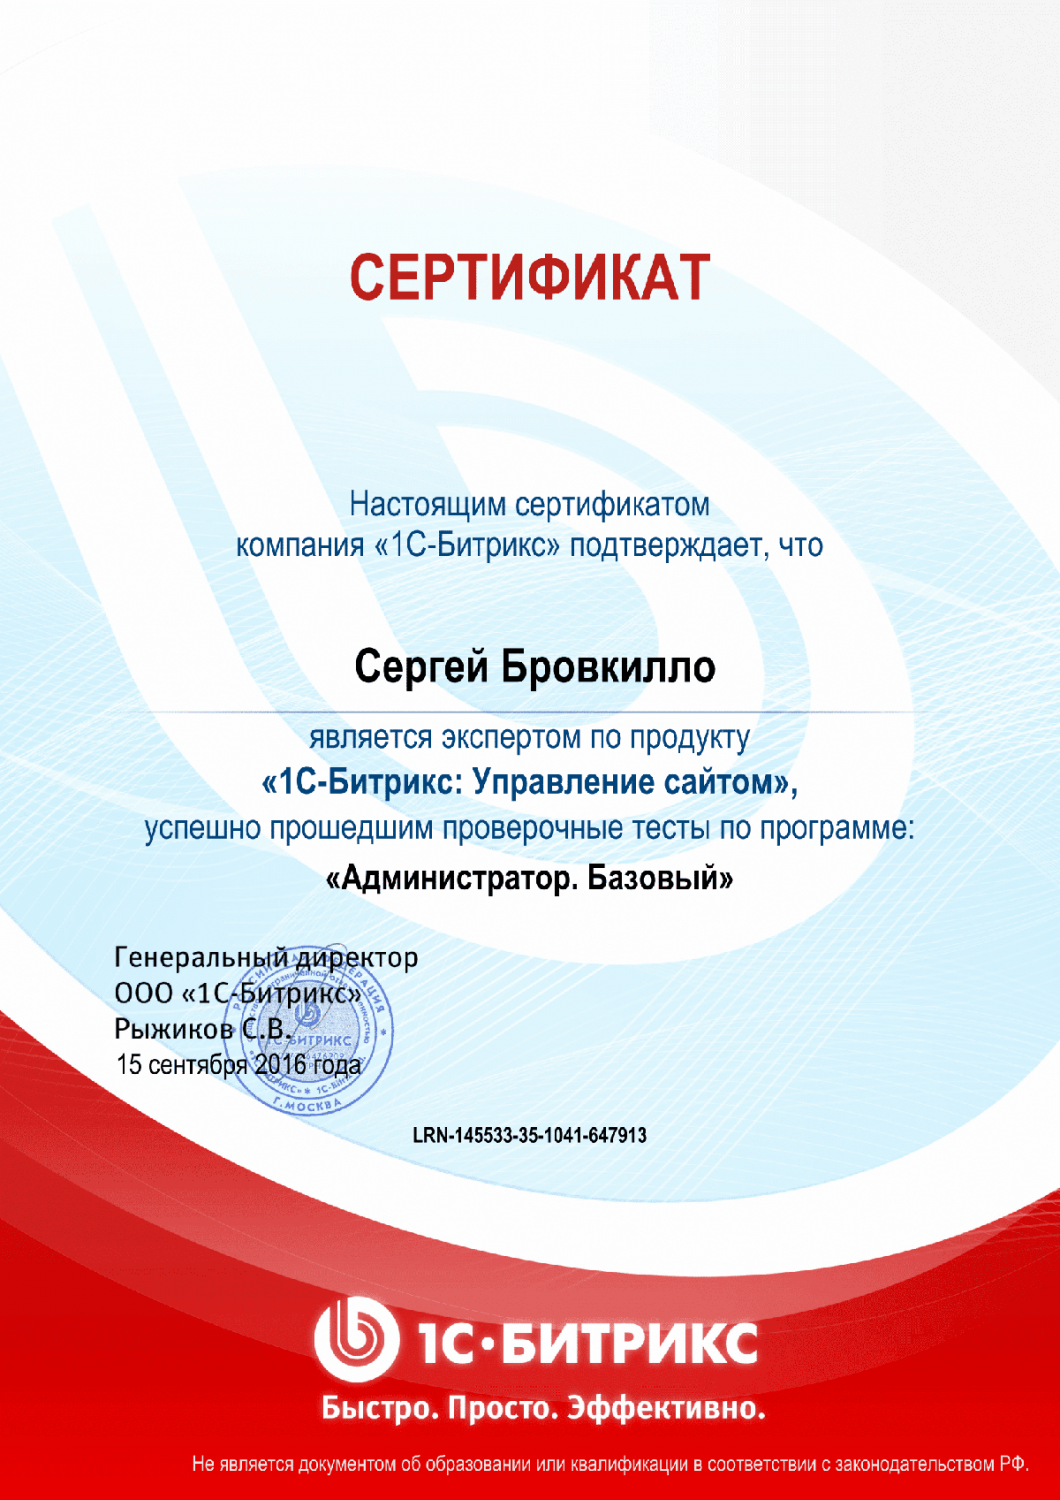 Сертификат эксперта по программе "Администратор. Базовый" в Костромы